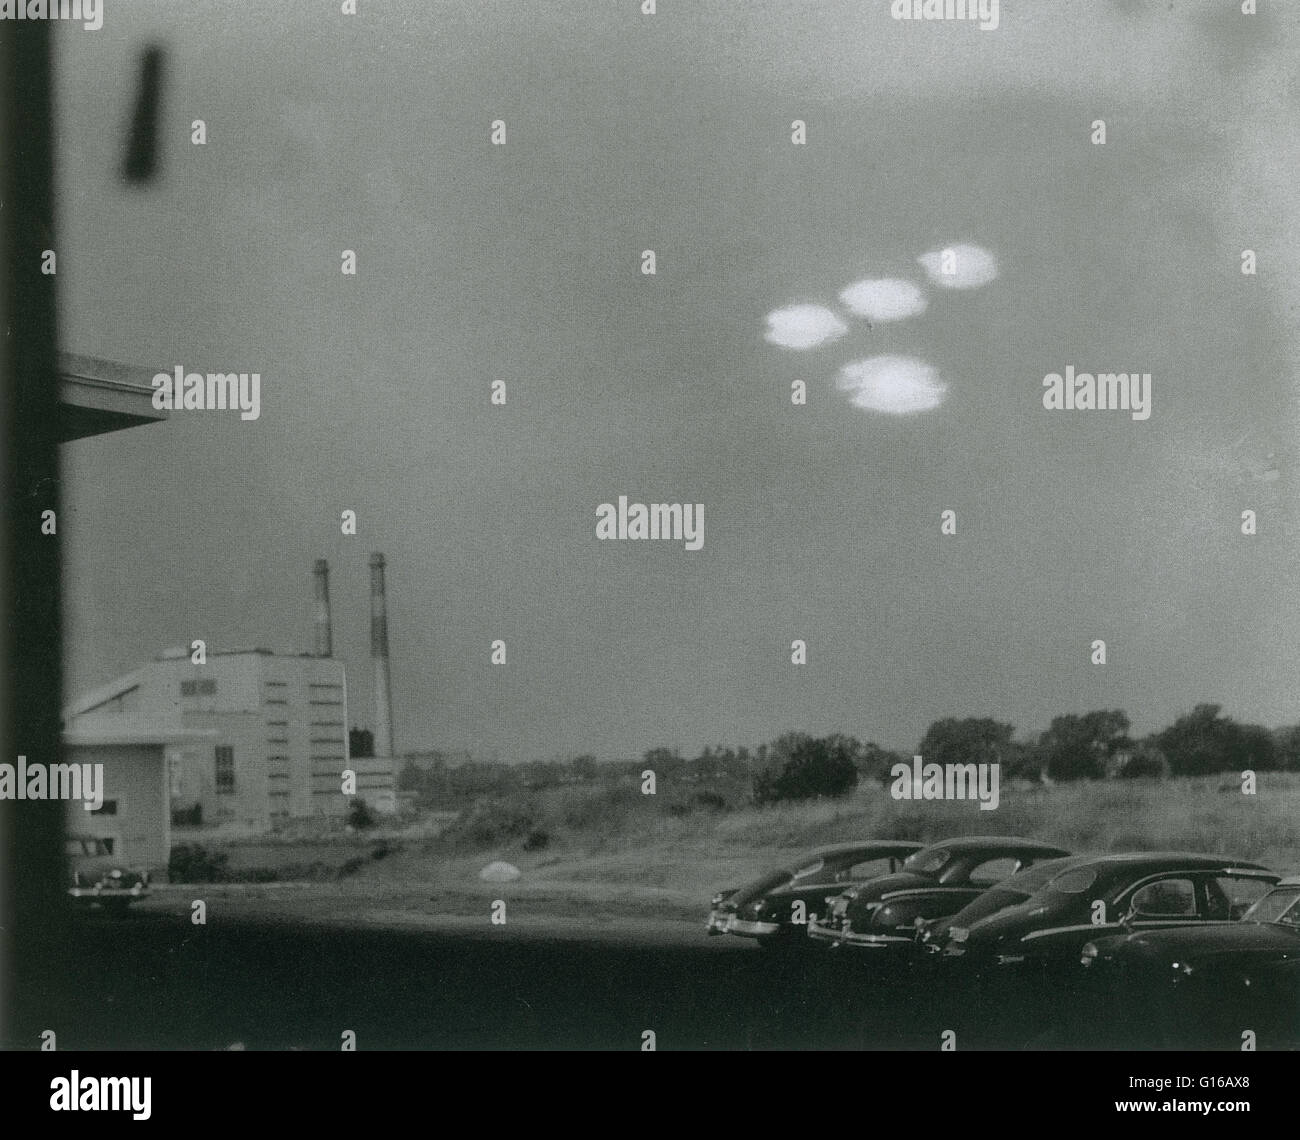 Am 16. Juli 1952 bei 09:35 Küstenwache Seemann Shell Alpert nahm dieses Bild von vier etwa elliptischen Blobs des Lichts in Bildung durch das Fenster seines fotografischen Labors. Die Objekte wurden auch von Coastguardsman Thomas Flaherty erlebt. Bo Stockfoto